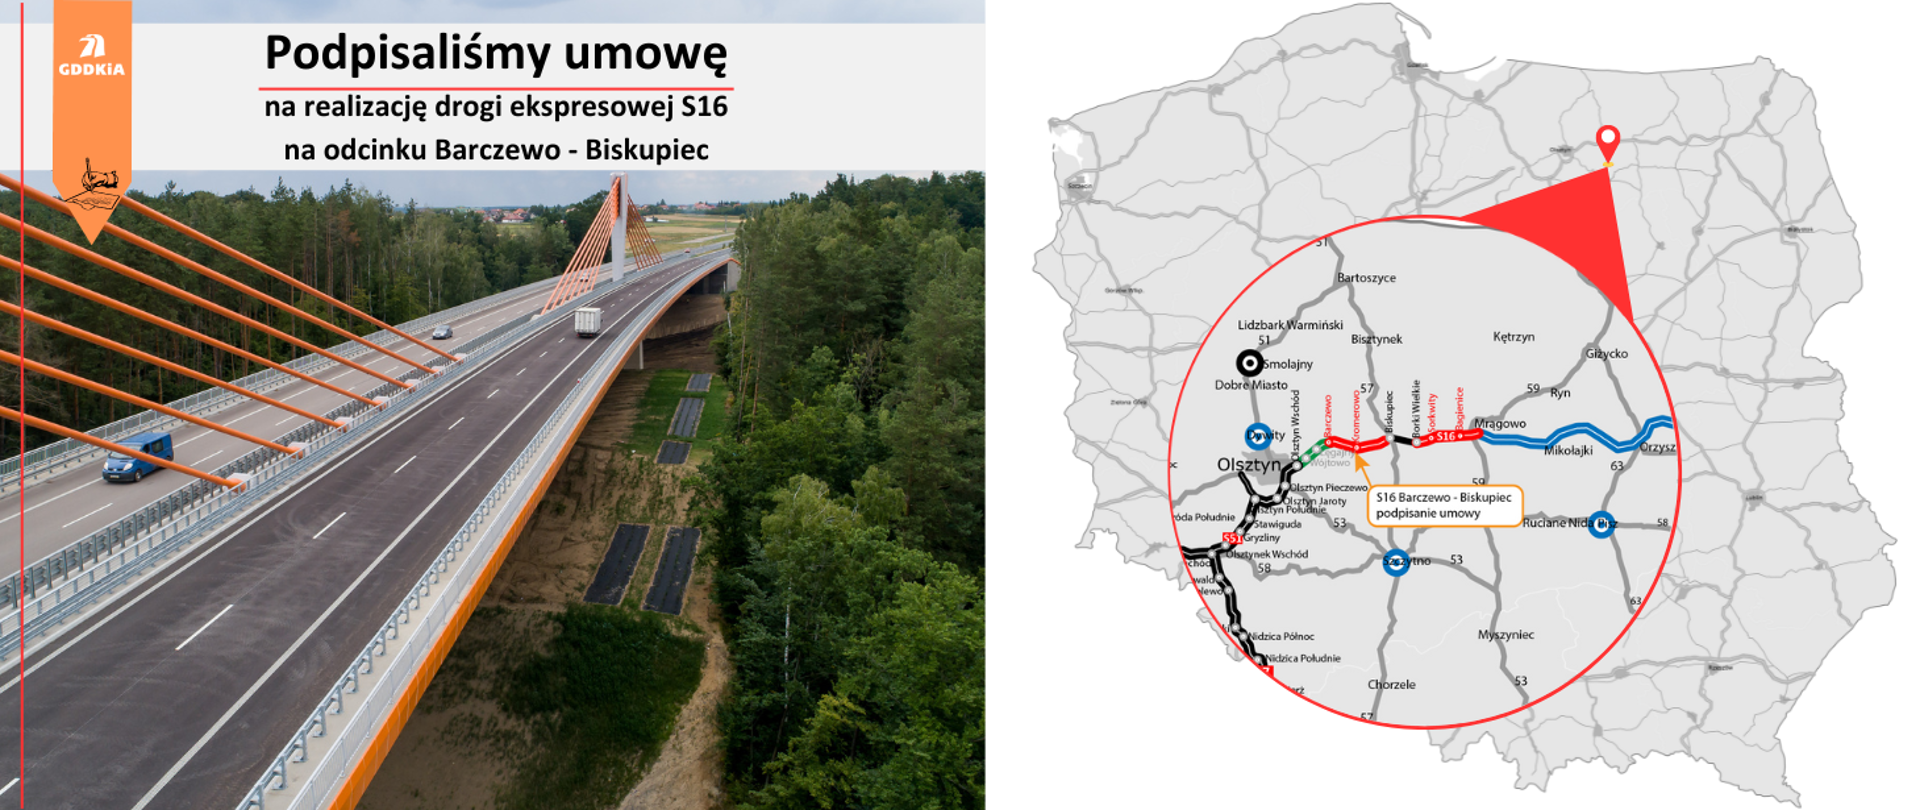 Po lewej stronie most z informacją o podpisaniu umowy na S16 na odcinku Barczewo - Biskupiec po prawej mapa z zaznaczonymi odcinkami S16.